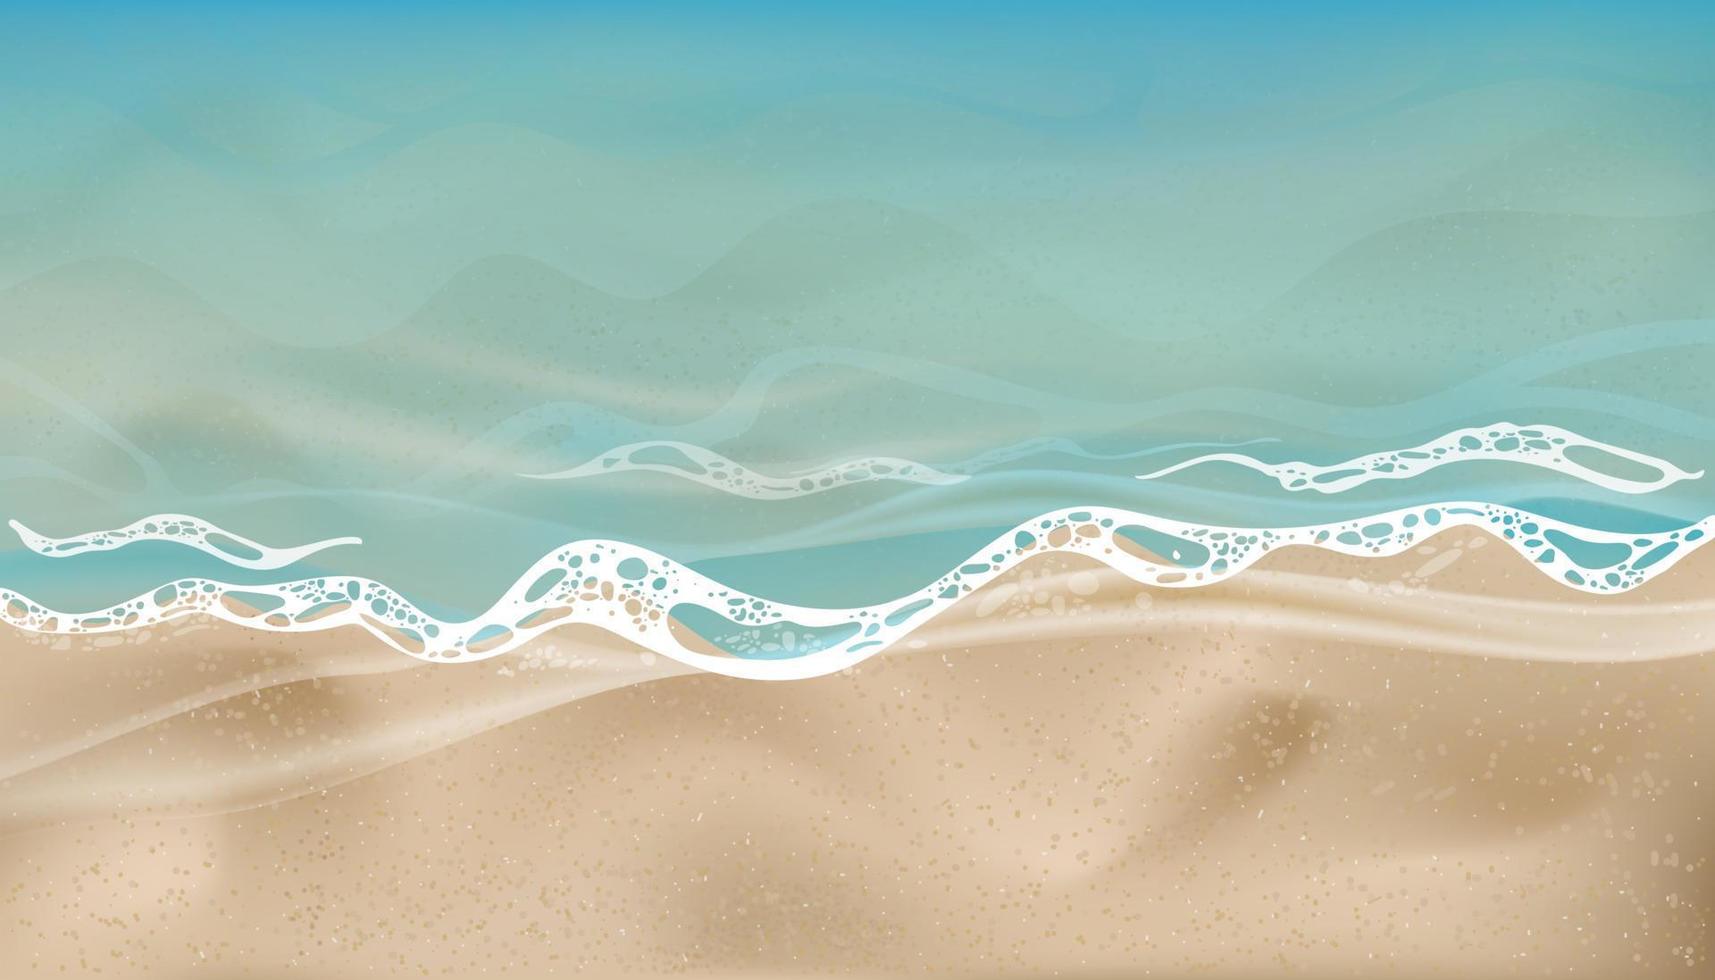 oceano azul com forma de onda suave e praia de areia, praia de areia para background.top view ilustração vetorial textura de areia, duna de areia de praia marrom pano de fundo para cancept de banner de verão vetor